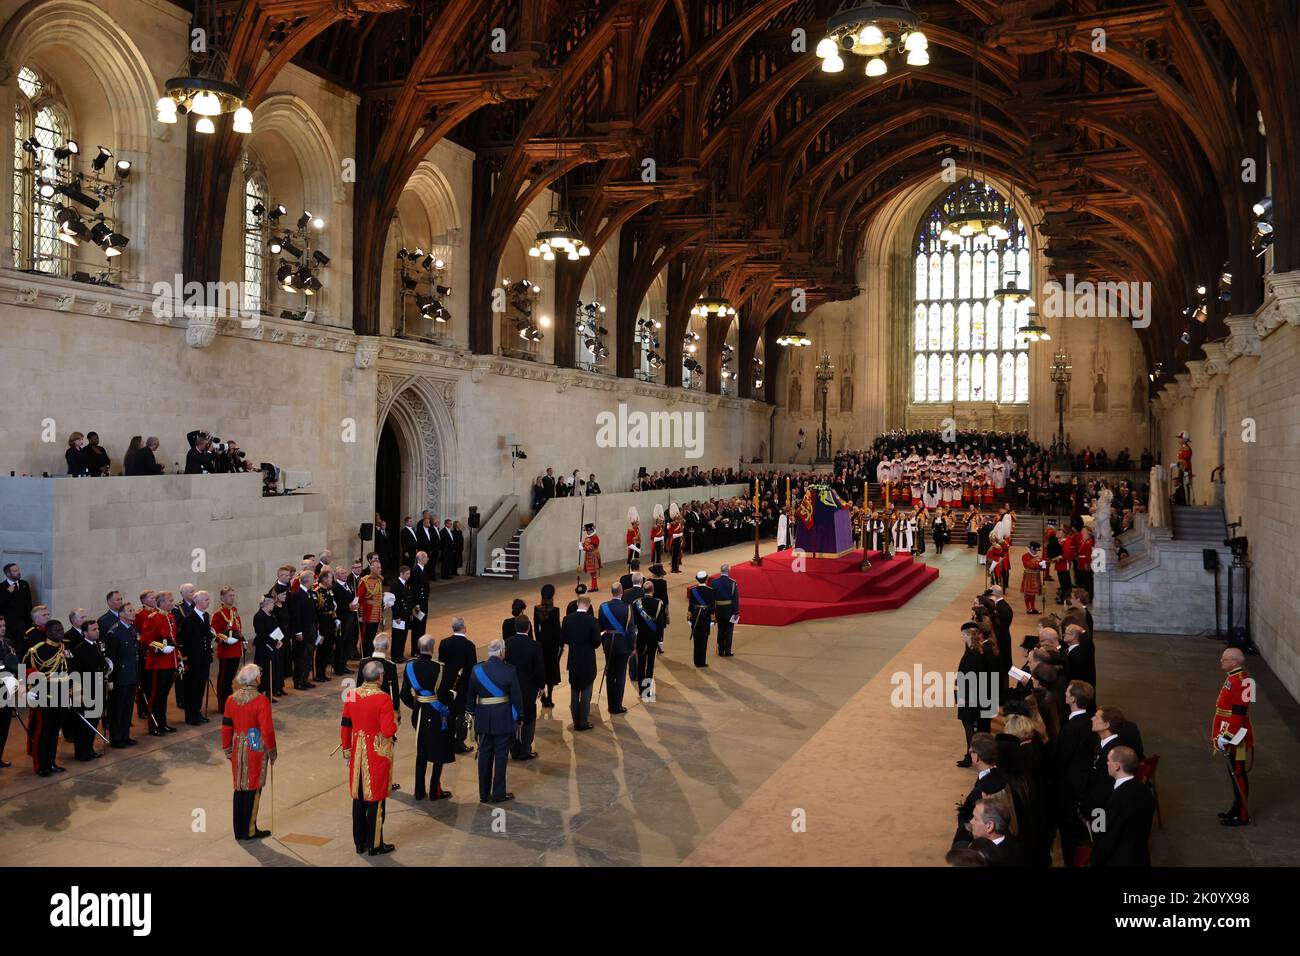 Mitglieder der königlichen Familie stehen hinter dem Sarg von Königin Elizabeth II. In der Westminster Hall, London, wo er vor ihrer Beerdigung am Montag in einem Zustand liegen wird. Bilddatum: Mittwoch, 14. September 2022. Stockfoto